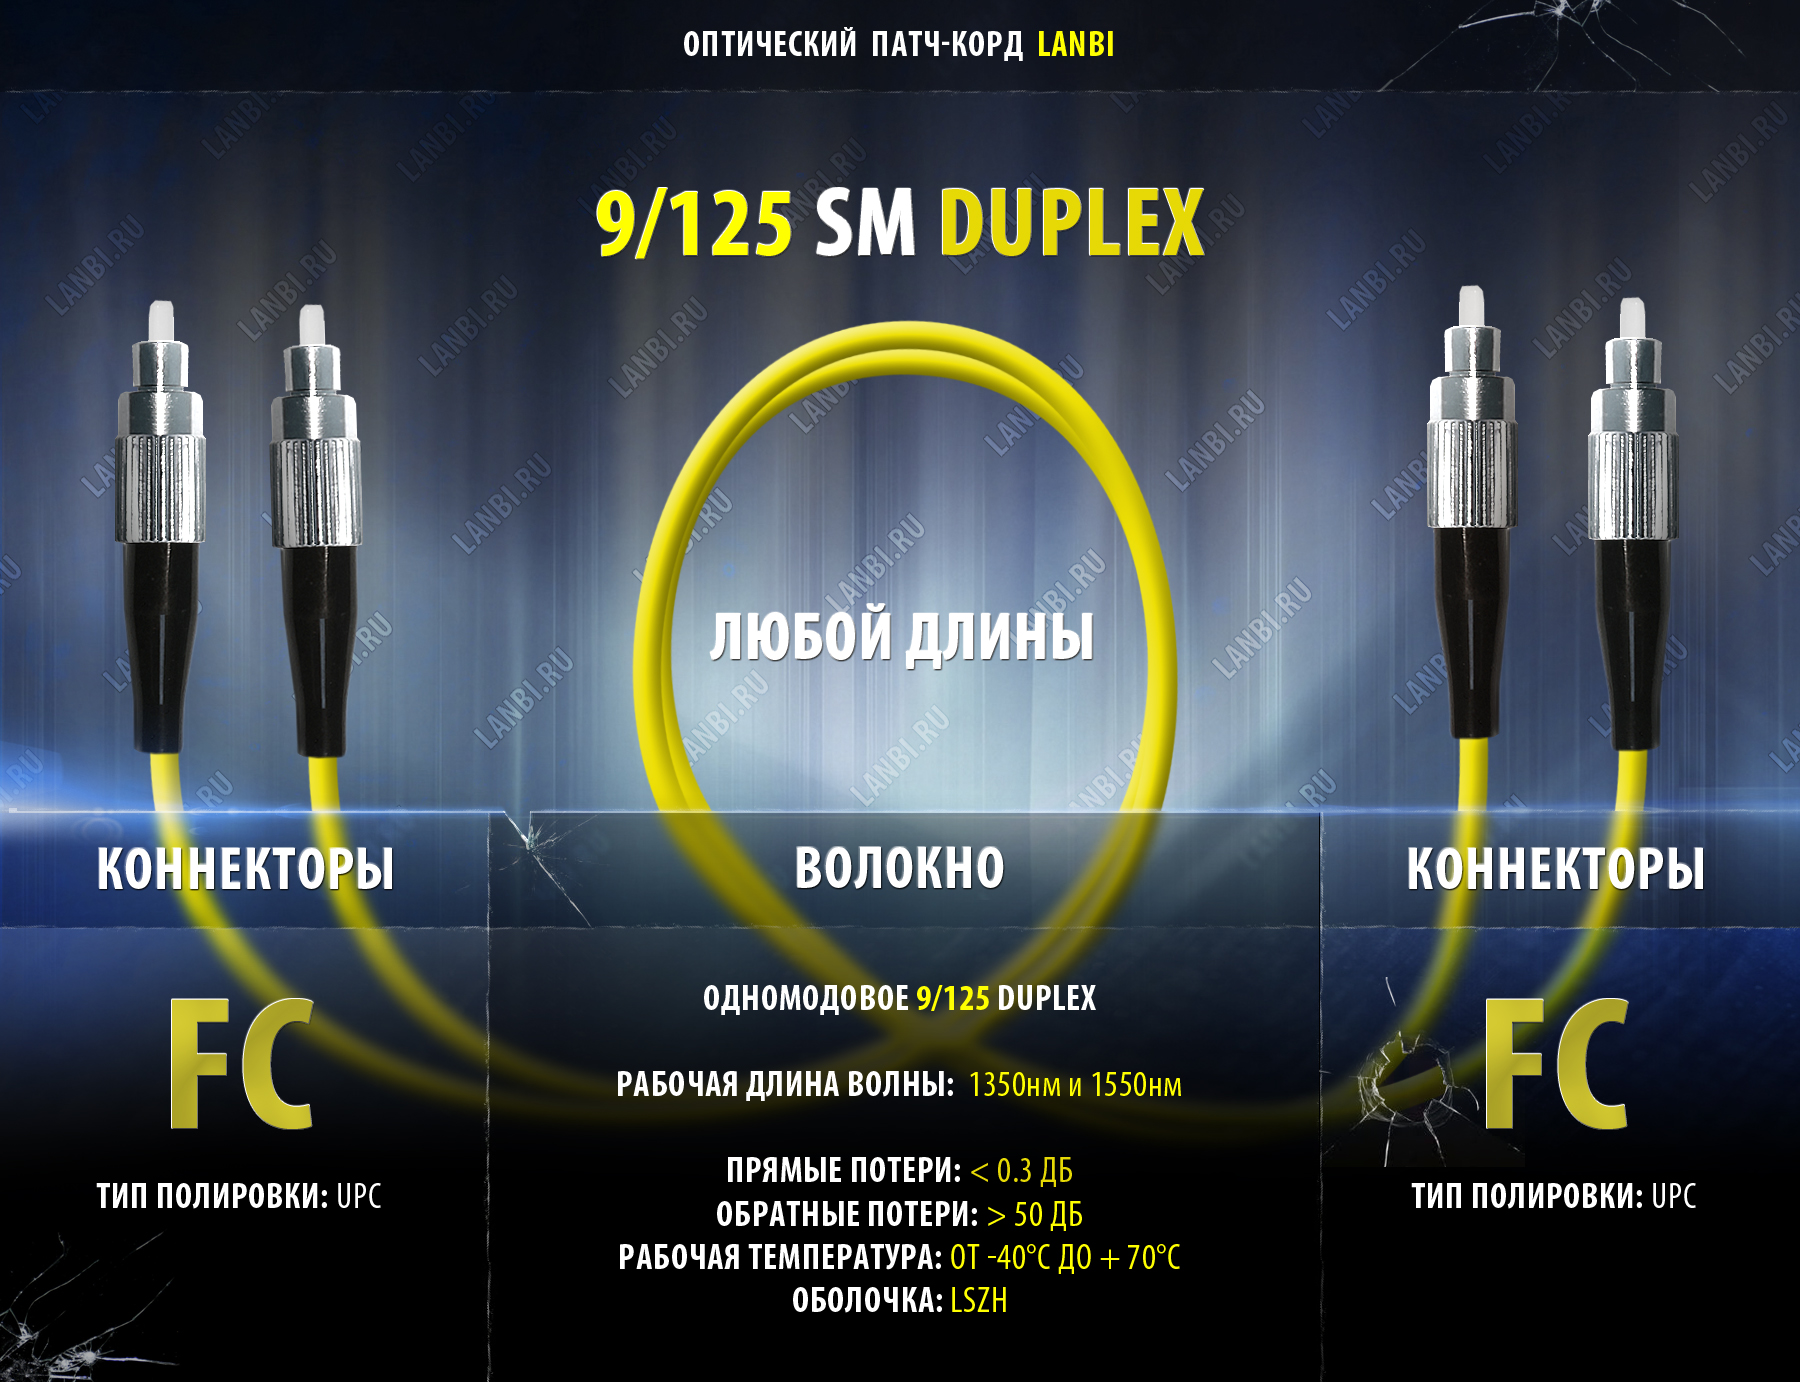    duplex 9/125 2FC-2FC, UPC, 0.5 